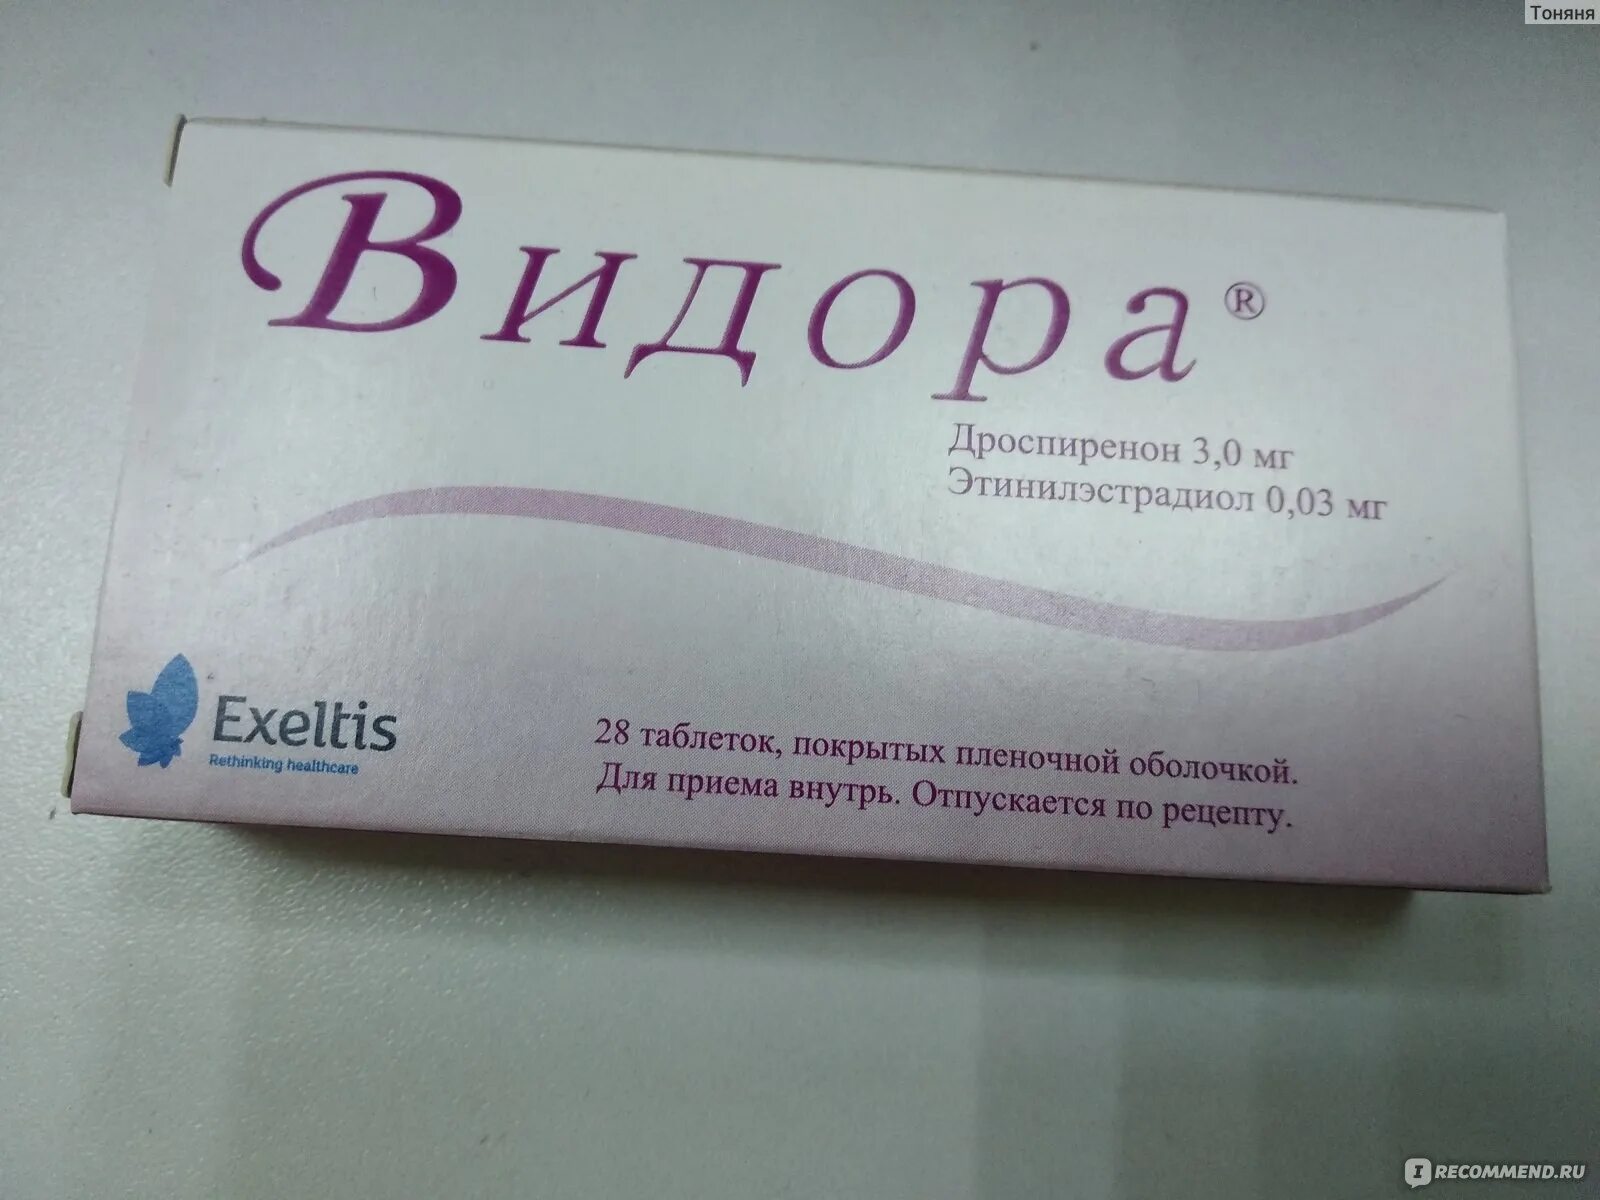 Противозачаточные Видора. Видора противозачаточный препарат. Таблетки контрацептивы Видора 21+7. Видора таблетки, покрытые пленочной оболочкой.